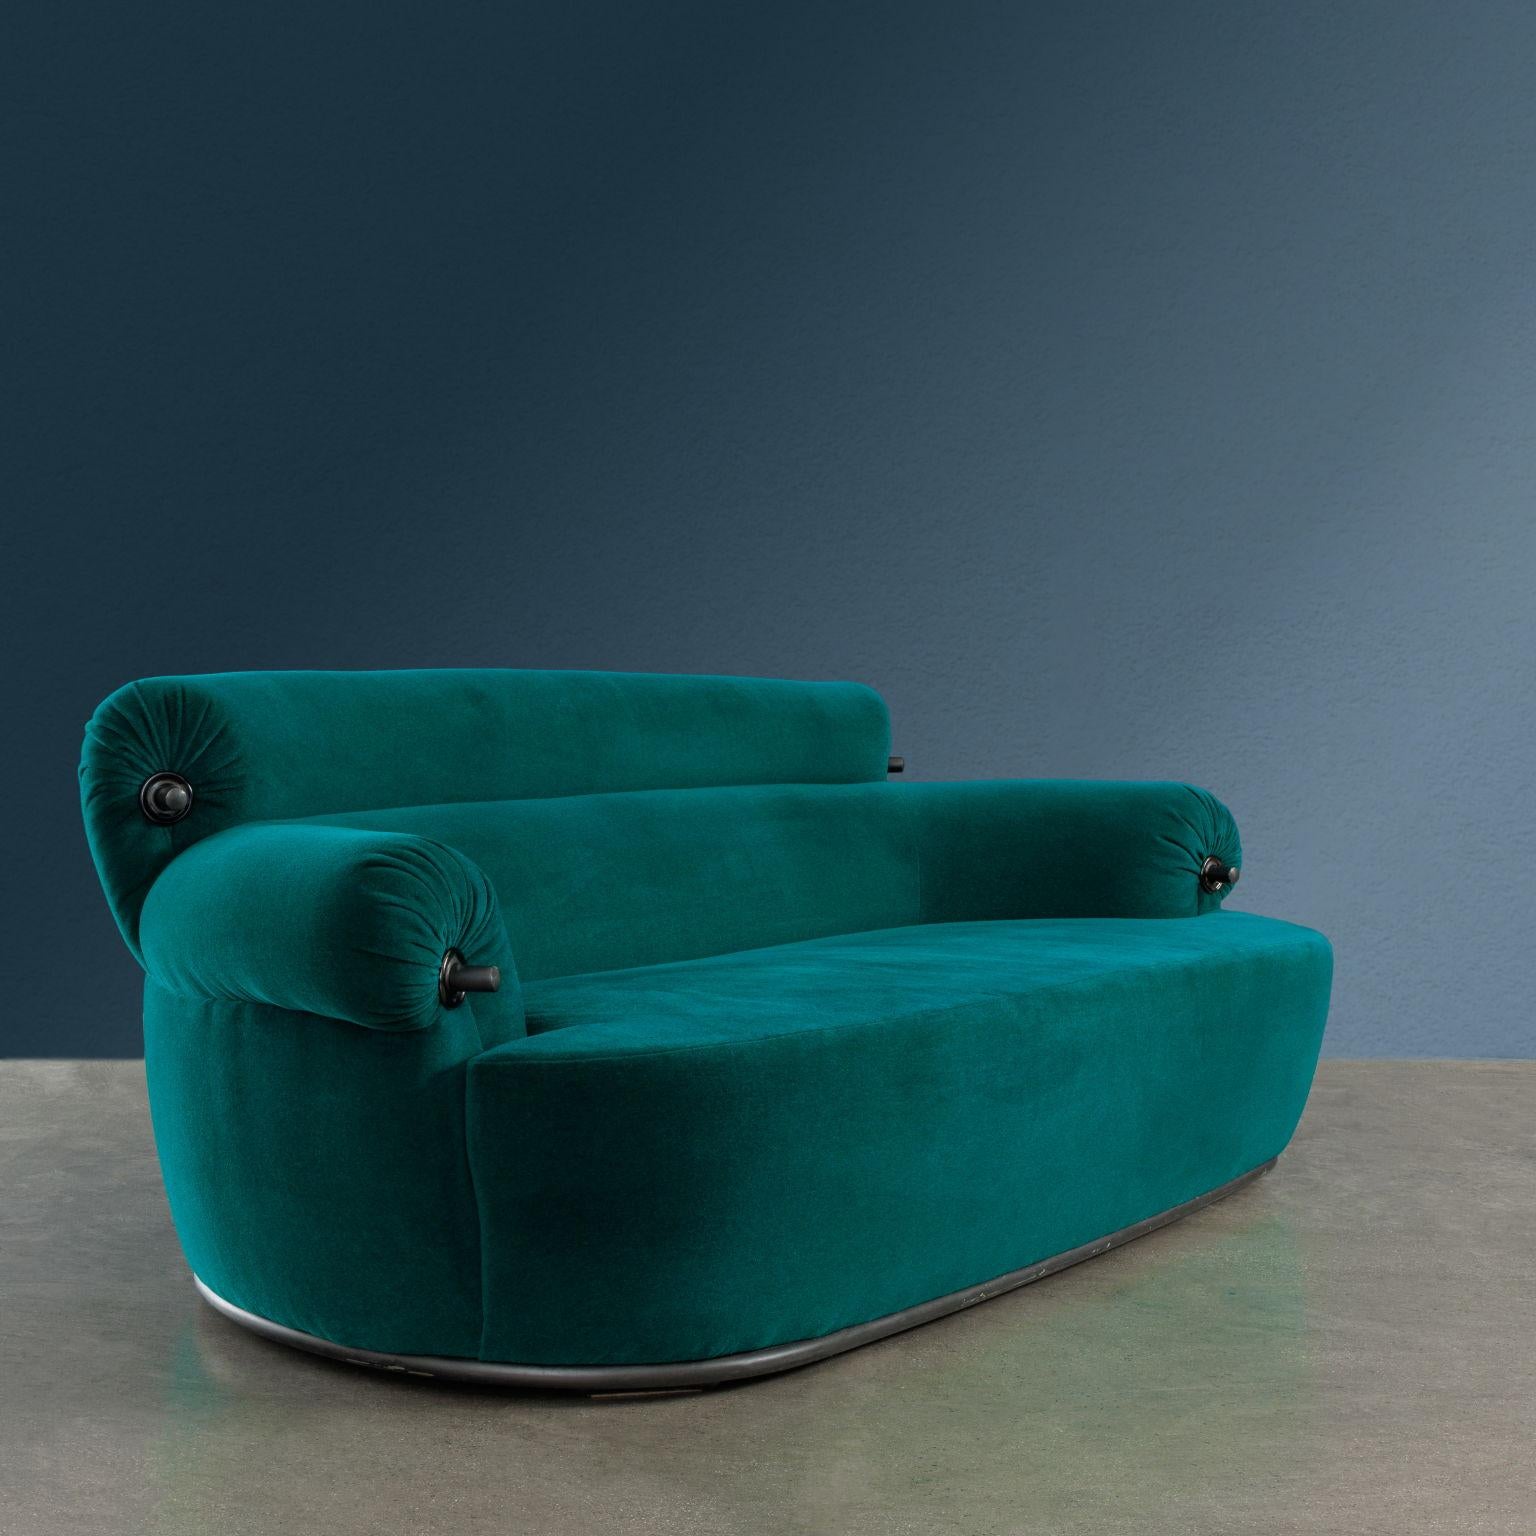 Iconico divano modello ‘P20B Toro’ disegnato nel 1973 da Luigi Caccia Dominioni per Azucena.
Seduta degli anni ’80 in ottime condizioni con tessuto originale di un meraviglioso verde, lavato e igienizzato.
La struttura metallica, che costituisce lo